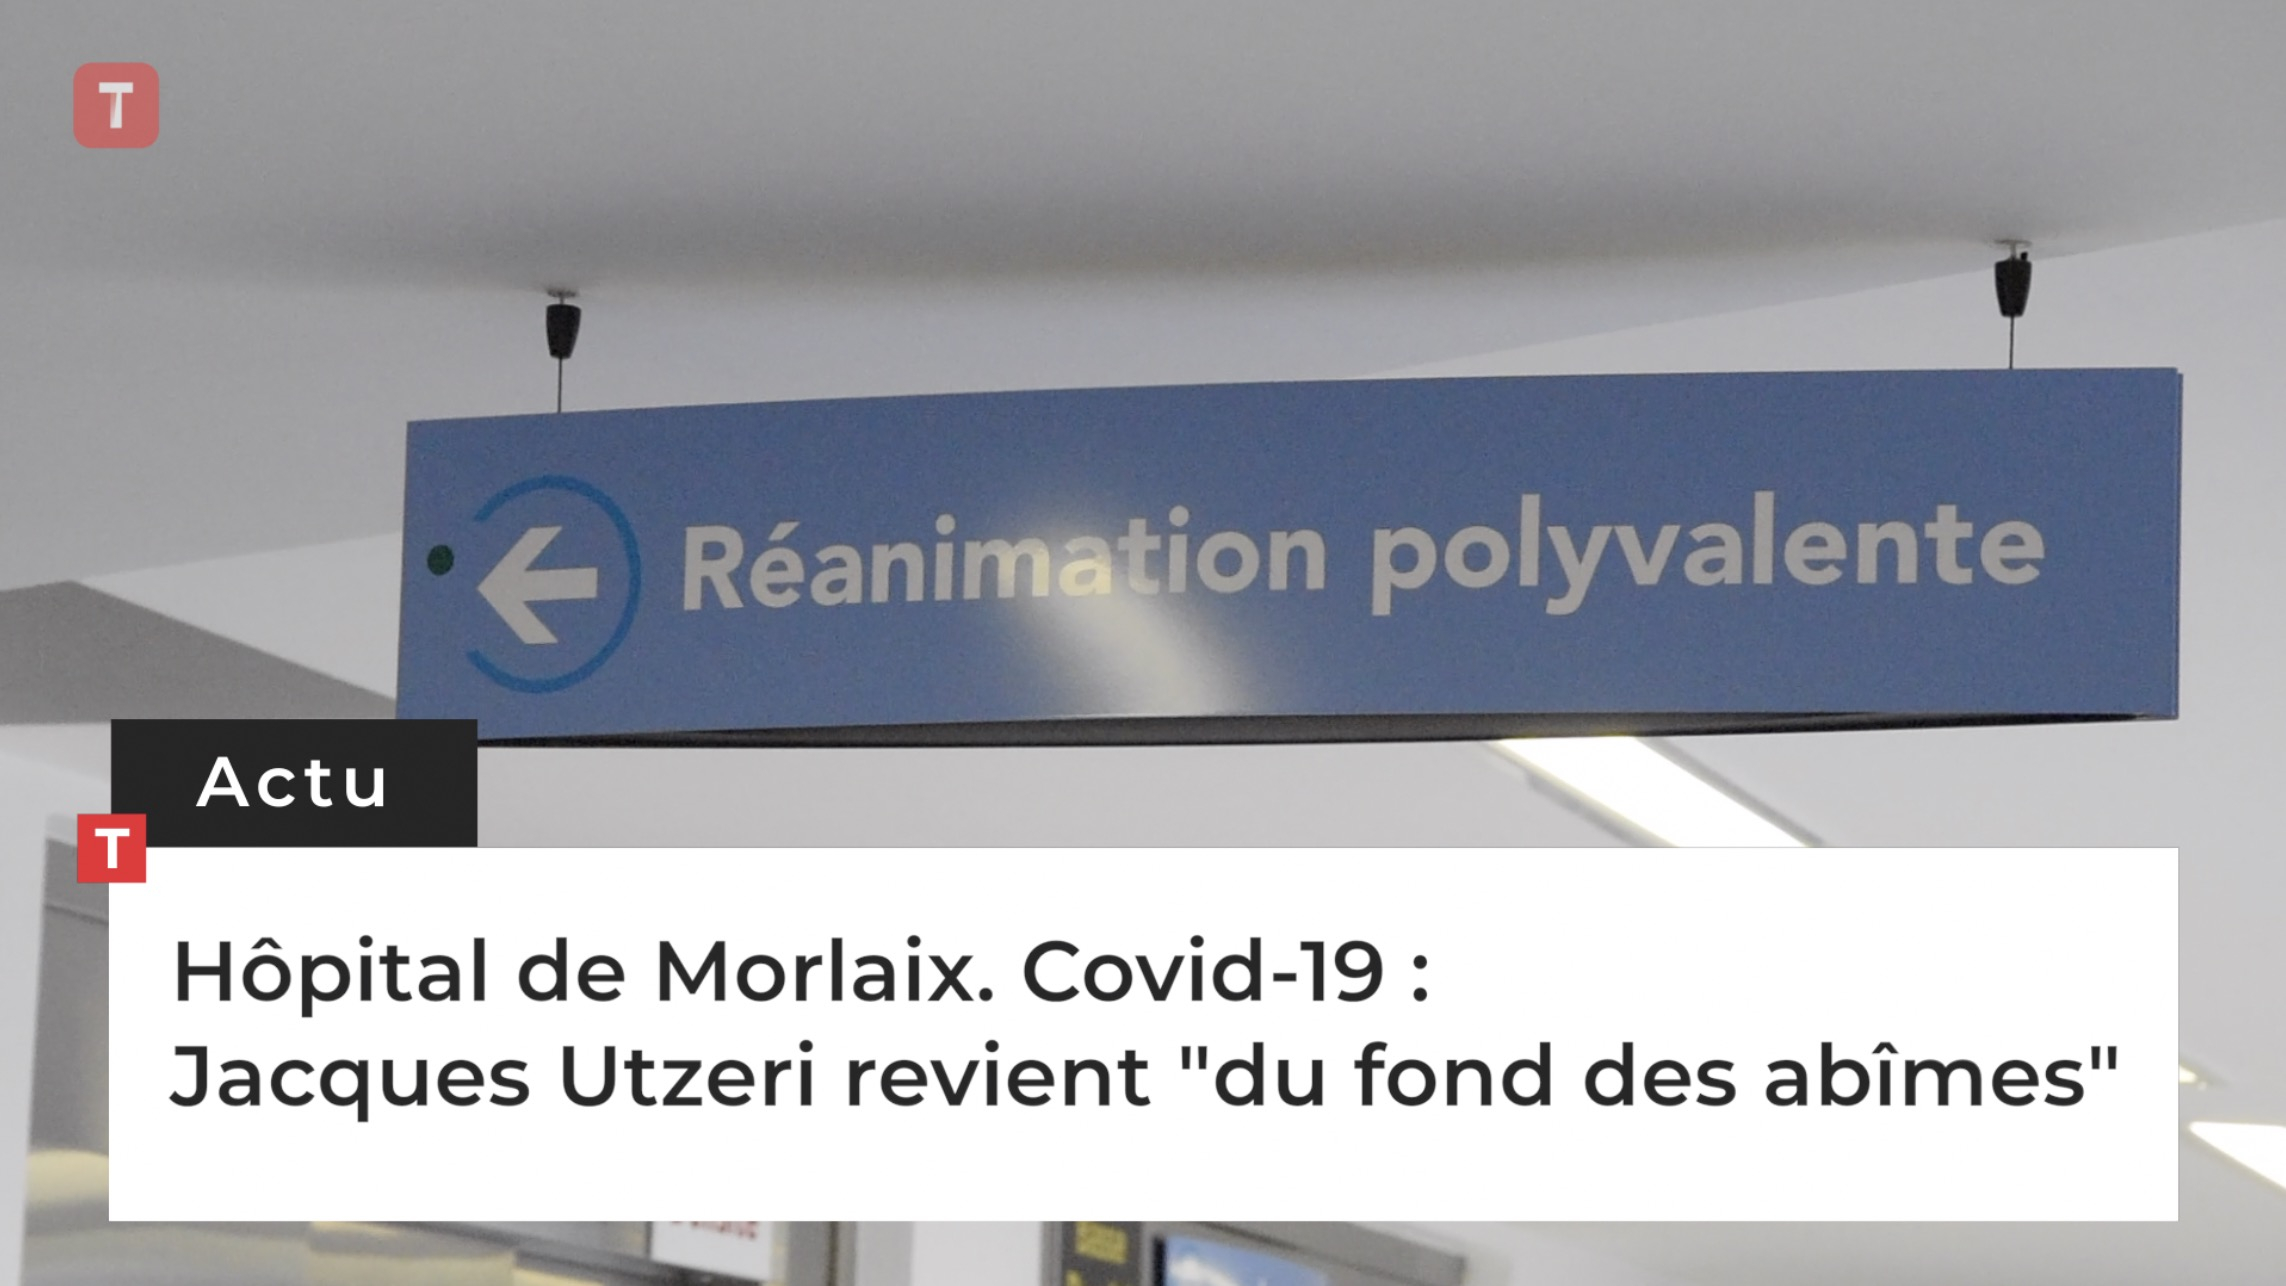 Hôpital de Morlaix. Covid-19 : Jacques Utzeri revient "du fond des abîmes" (Le Télégramme)